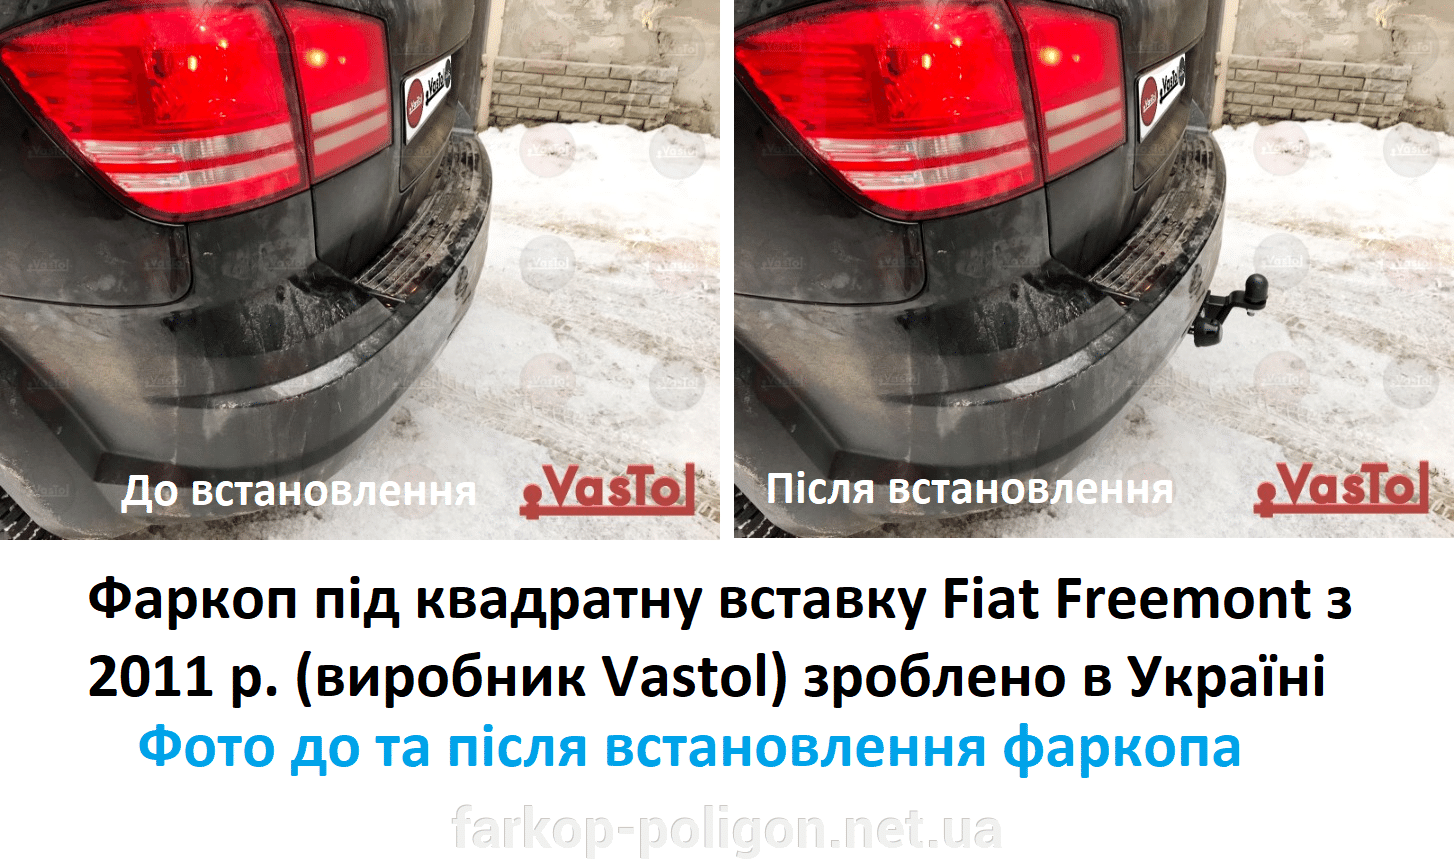 Фото до та після встановлення Фаркоп під квадратну вставку Fiat Freemont з 2011 р.